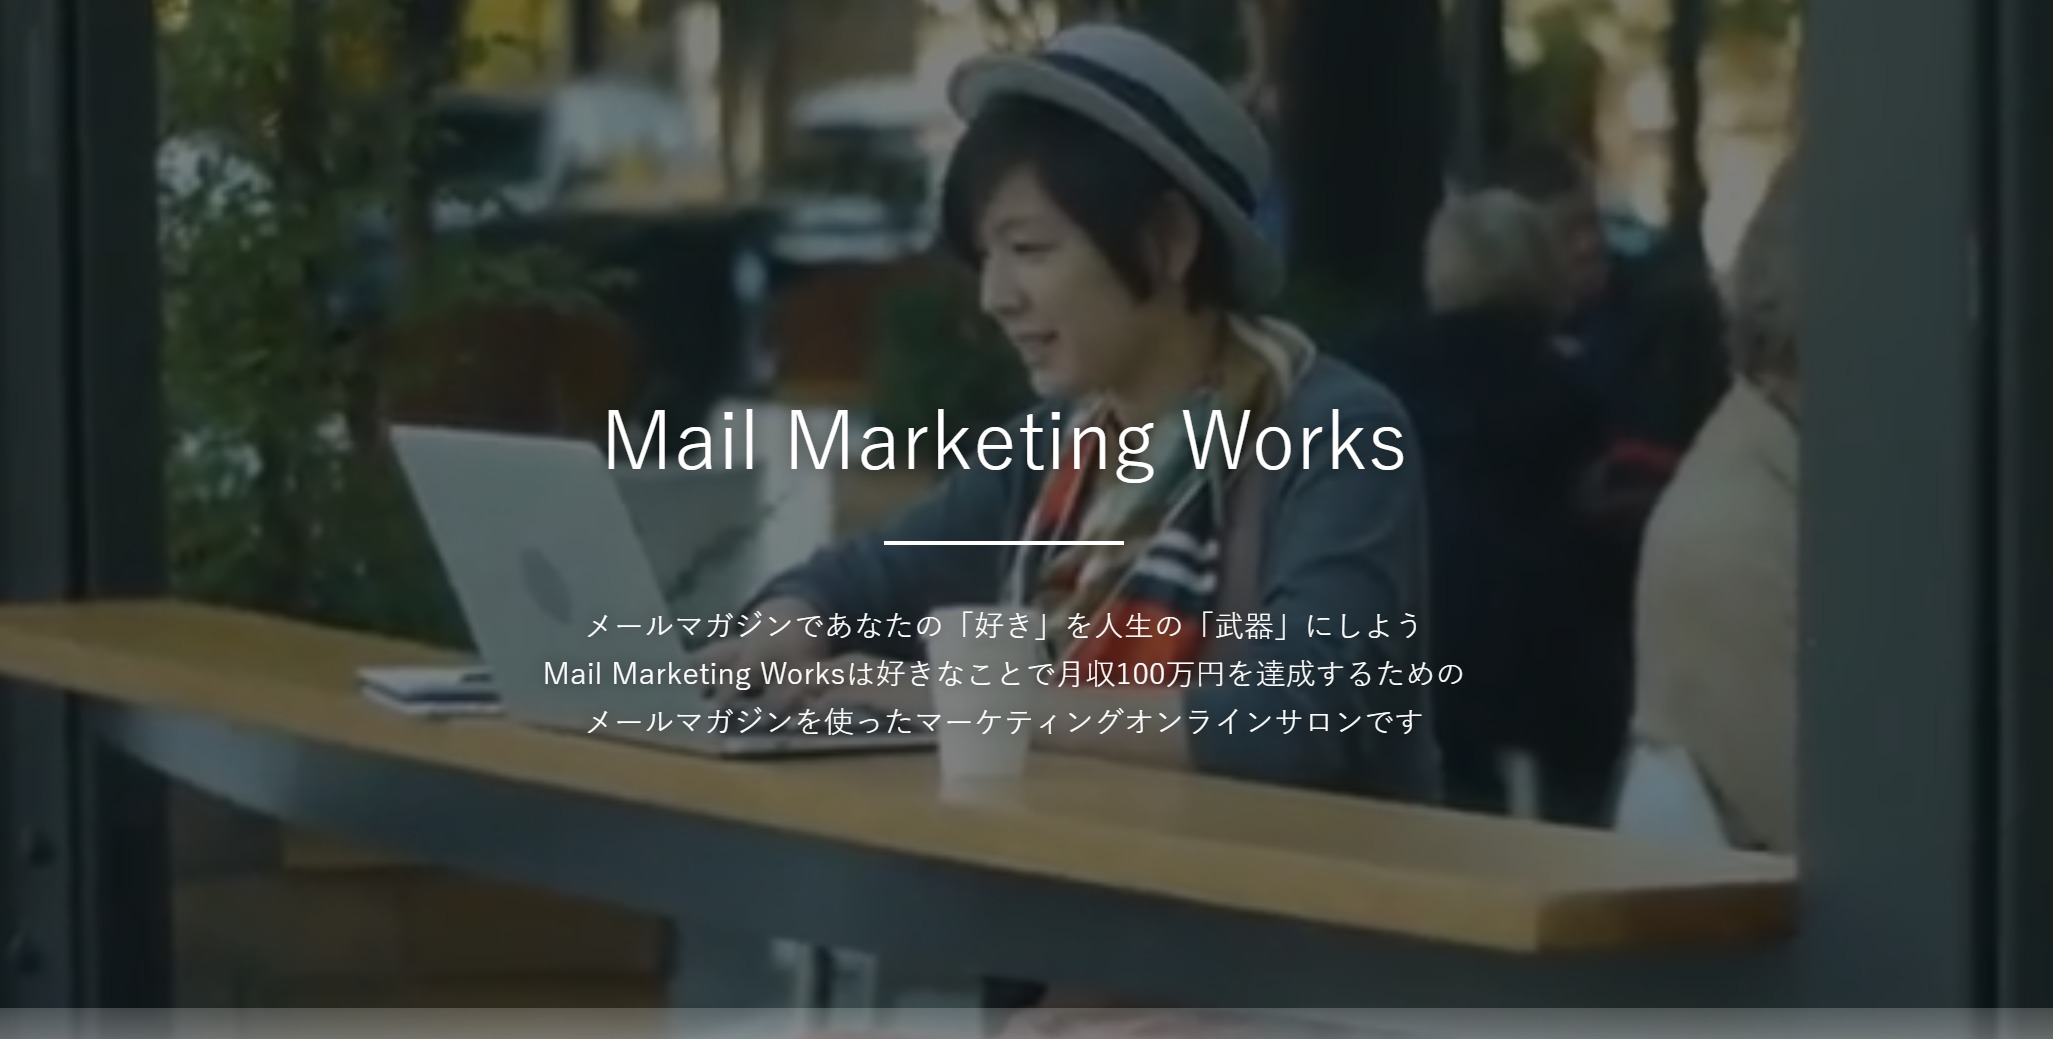 メルマガのオンラインサロン「Mail Marketing Works」始めました。